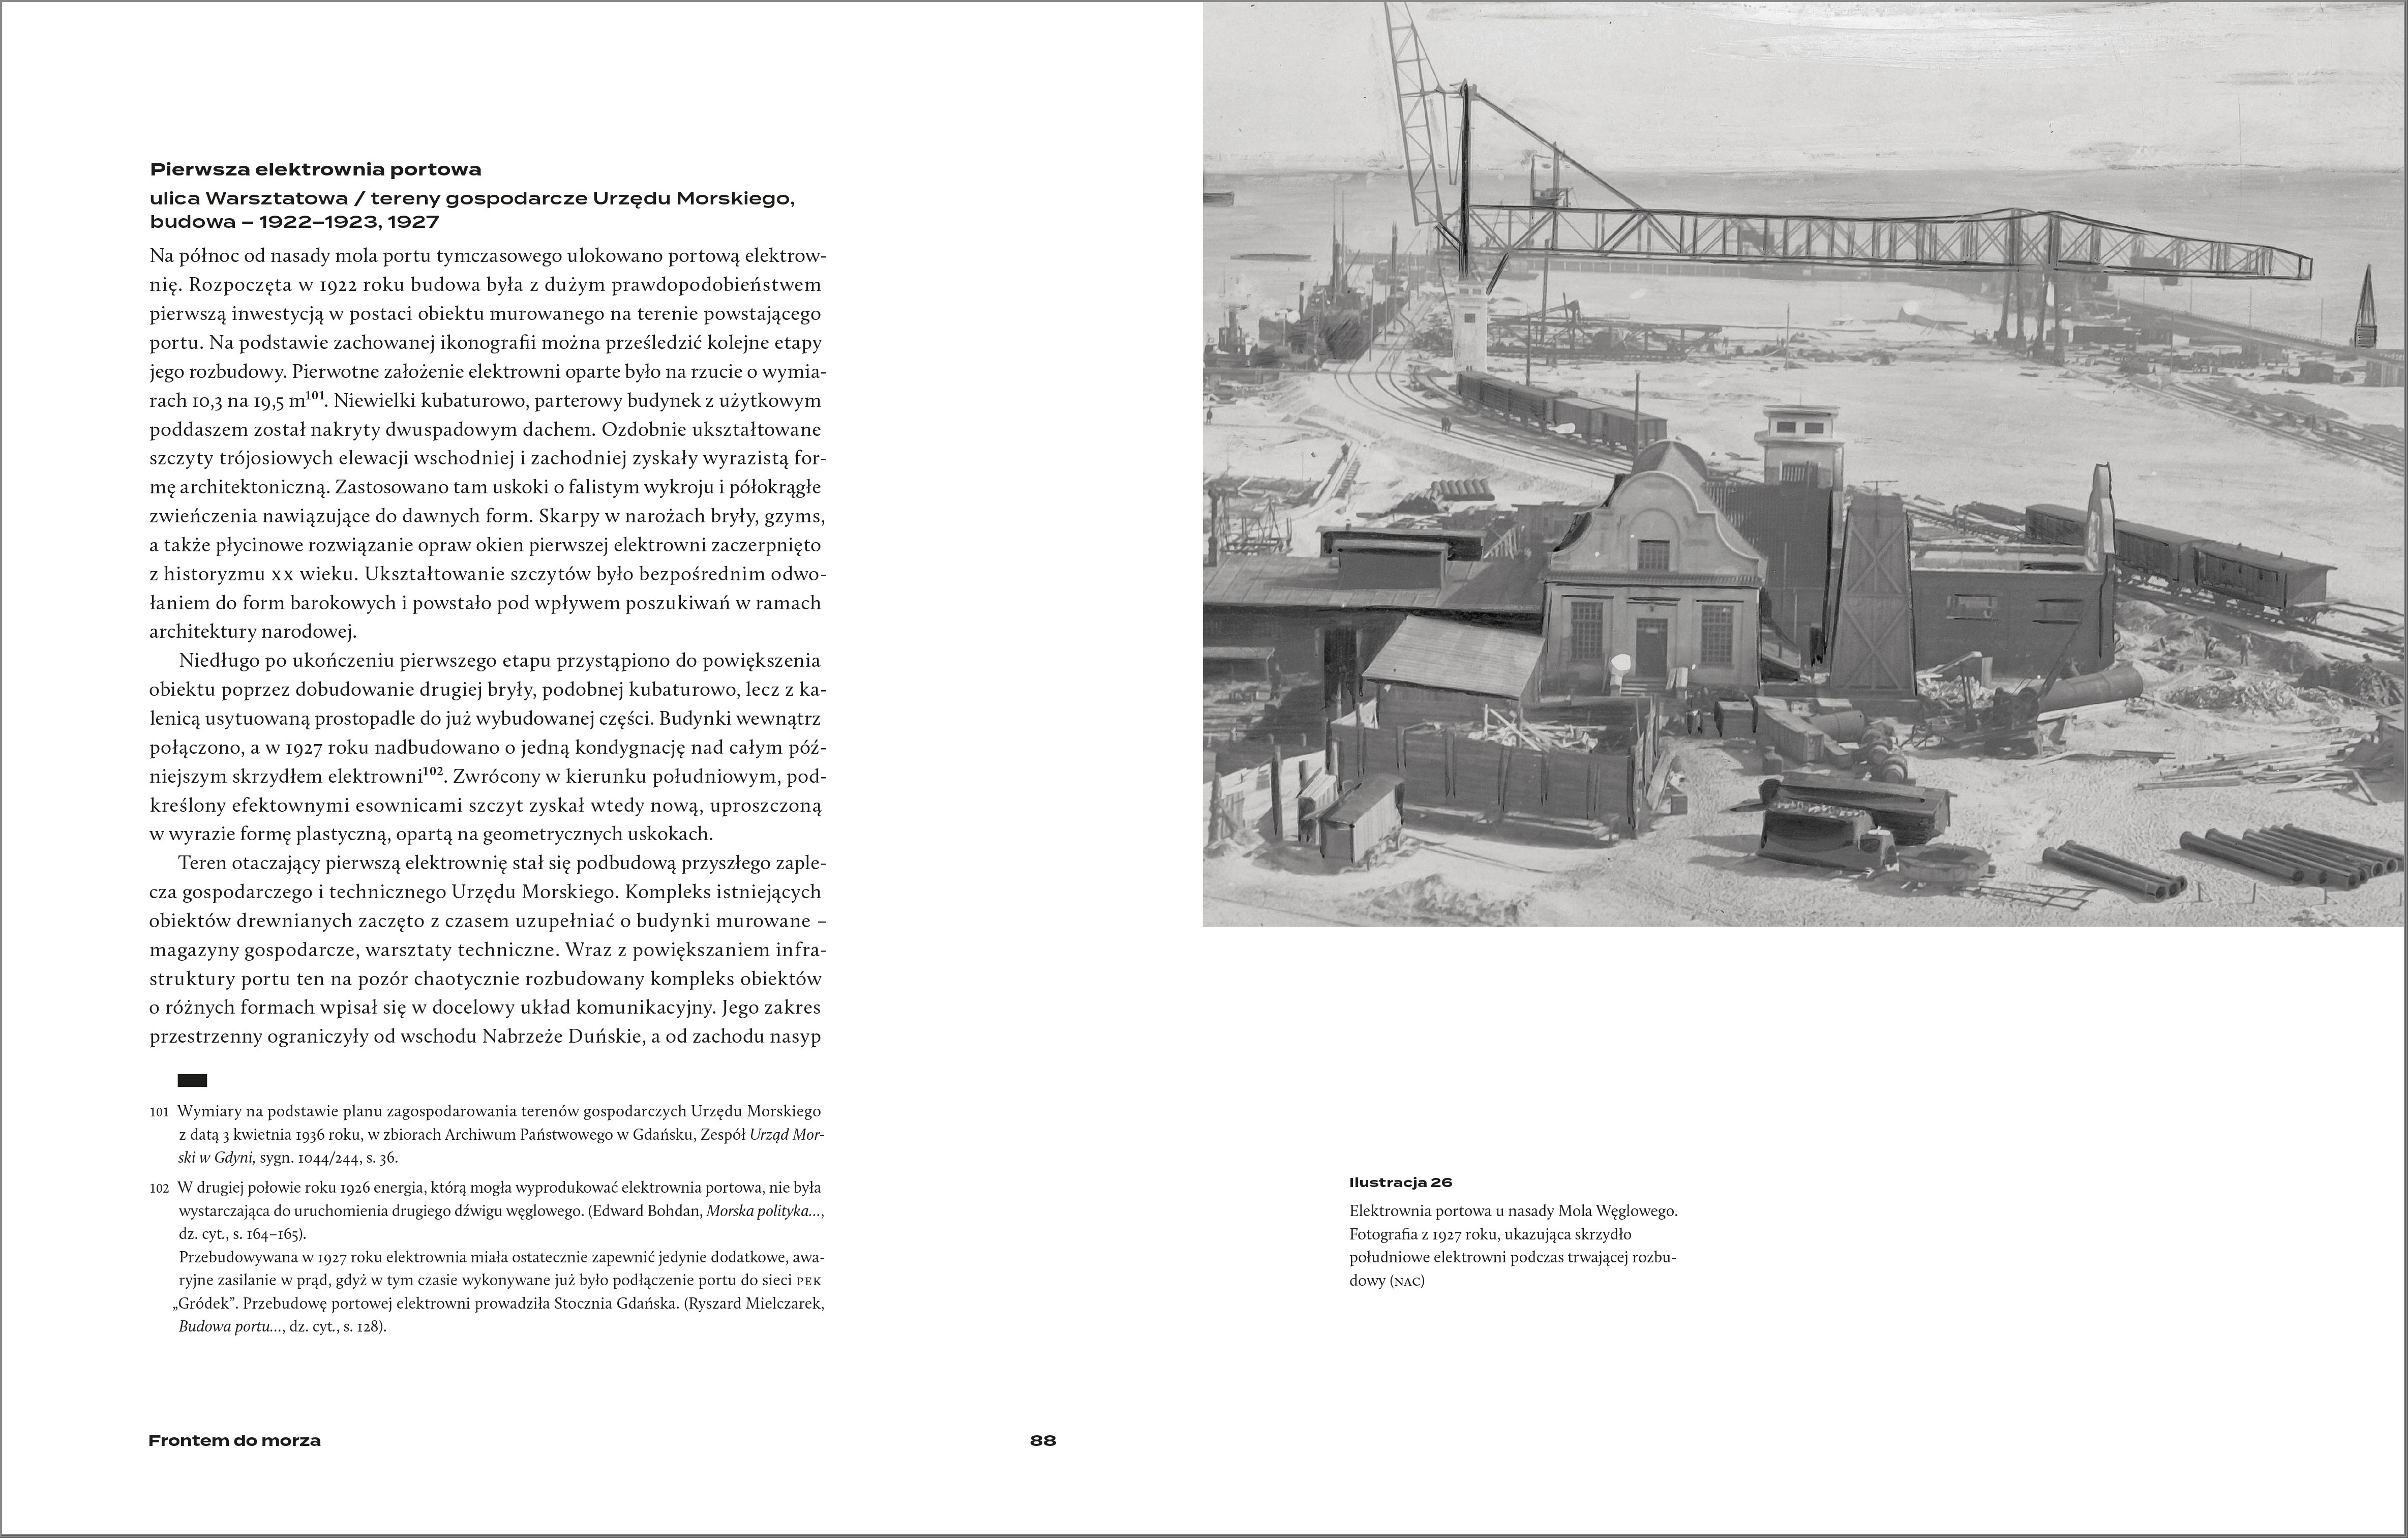 Frontem do morza. Plan, budowa i architektura portu w Gdyni